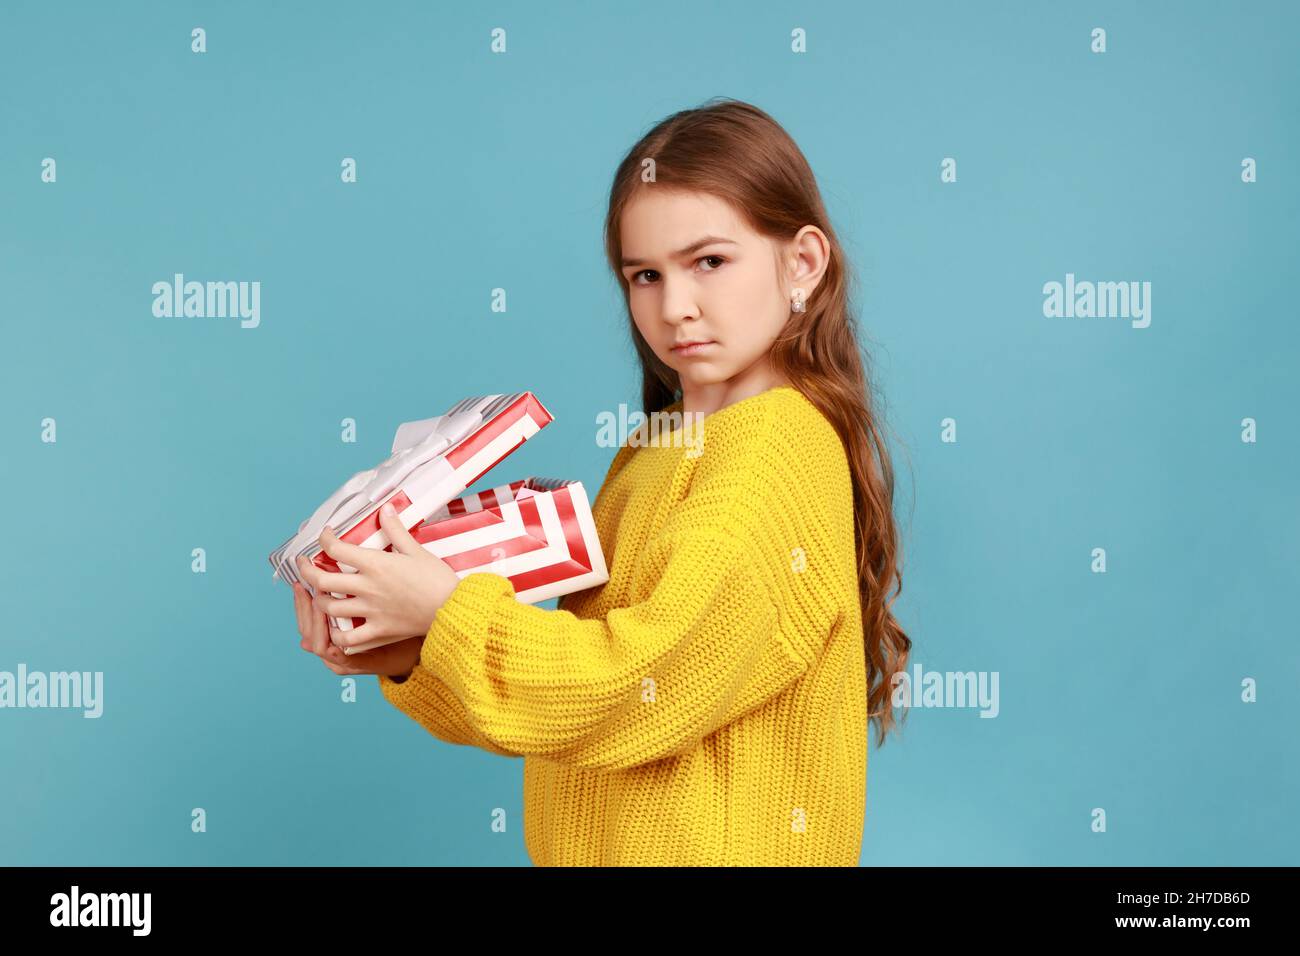 Seitenansicht des kleinen Mädchens öffnet Geschenkbox, drückt Traurigkeit aus, feiert Urlaub, enttäuscht vom Geschenk, trägt gelben lässigen Stil Pullover. Innenaufnahme des Studios isoliert auf blauem Hintergrund. Stockfoto